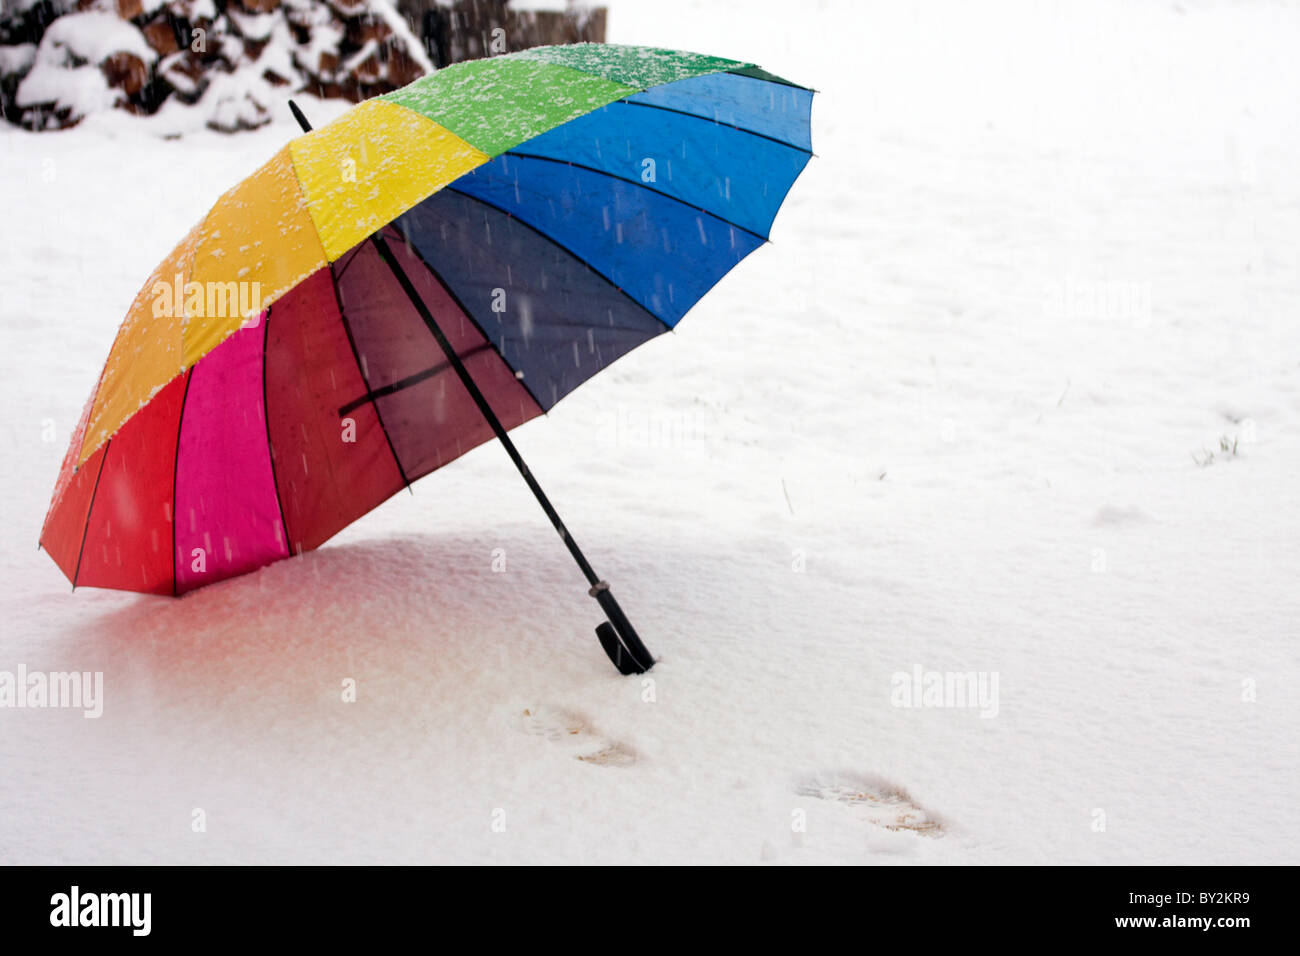 Geöffneten Regenschirm auf dem Boden im Winter Blizzard. Stockfoto